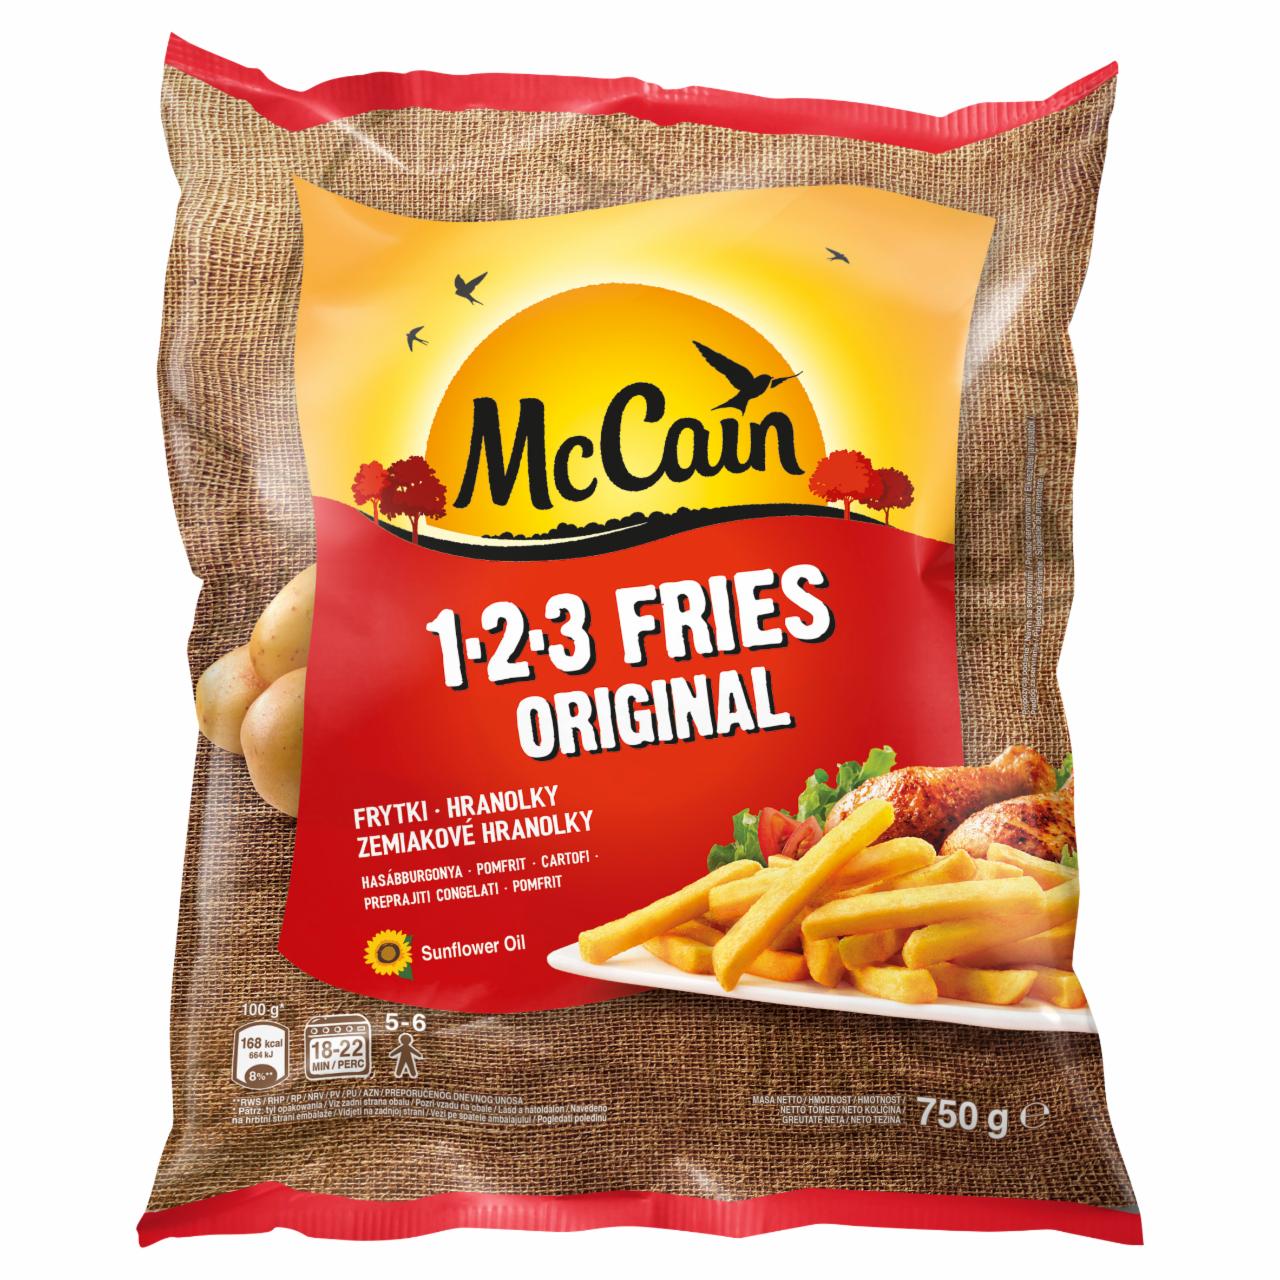 Zdjęcia - 1.2.3 Fries Original Frytki McCain